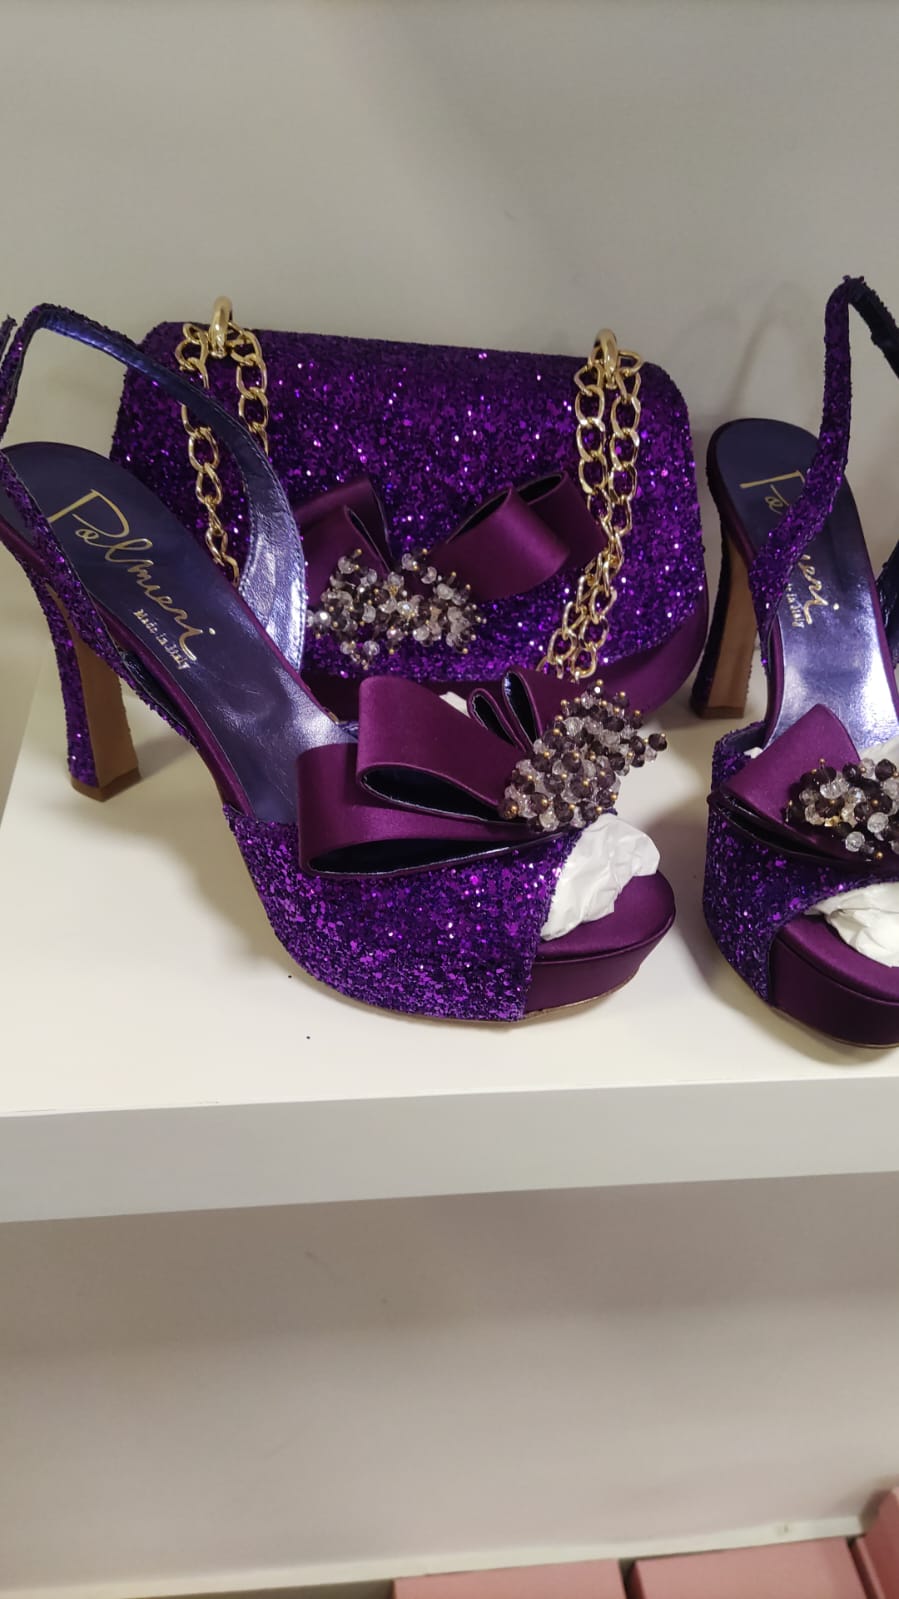 Luxury Italian Bruno shoe and bag - Godshandfashion - Purple EUR 42/US 11, bruno shoes